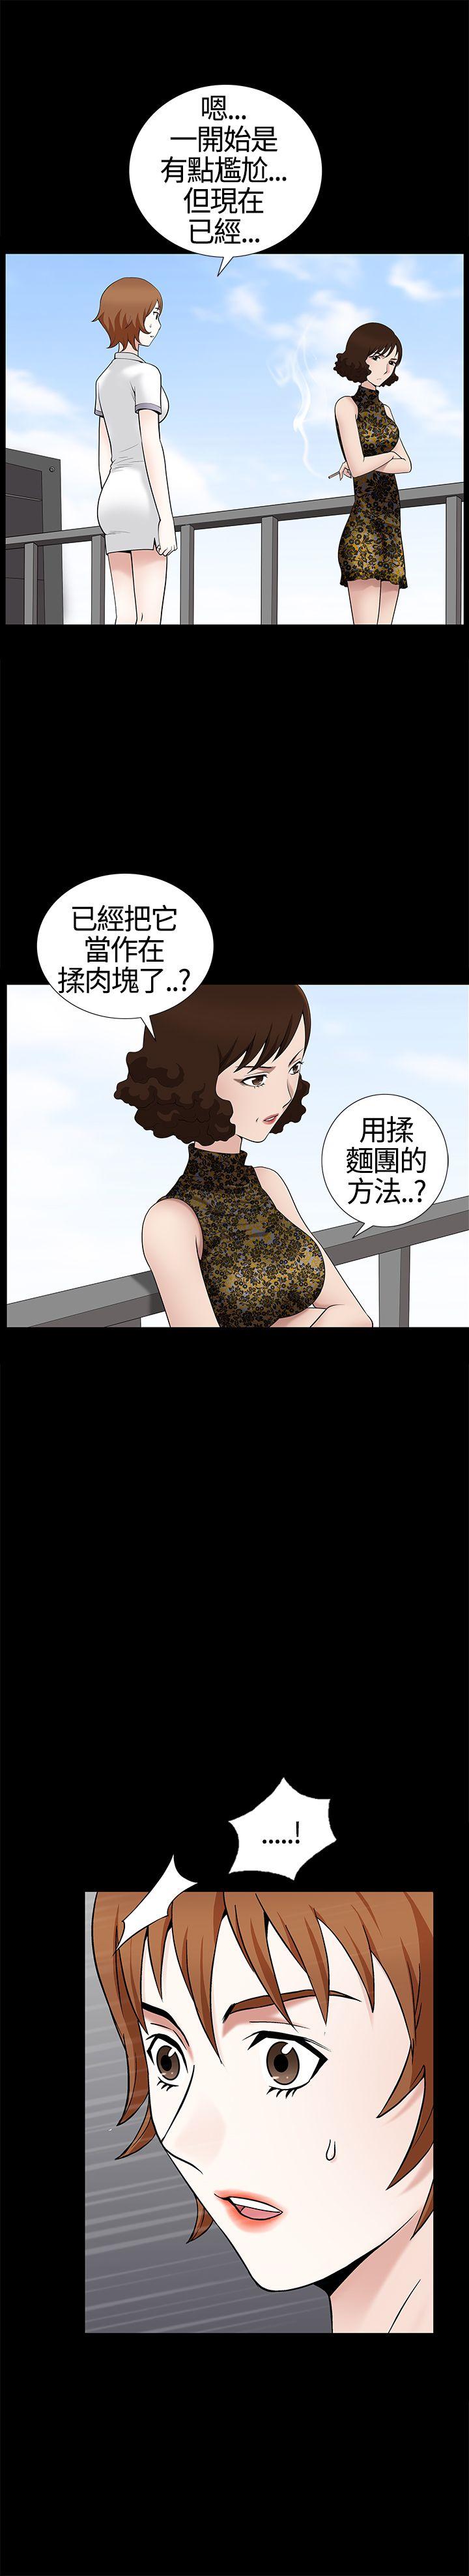 韩国污漫画 人妻性解放3:粗糙的手 第12话 13